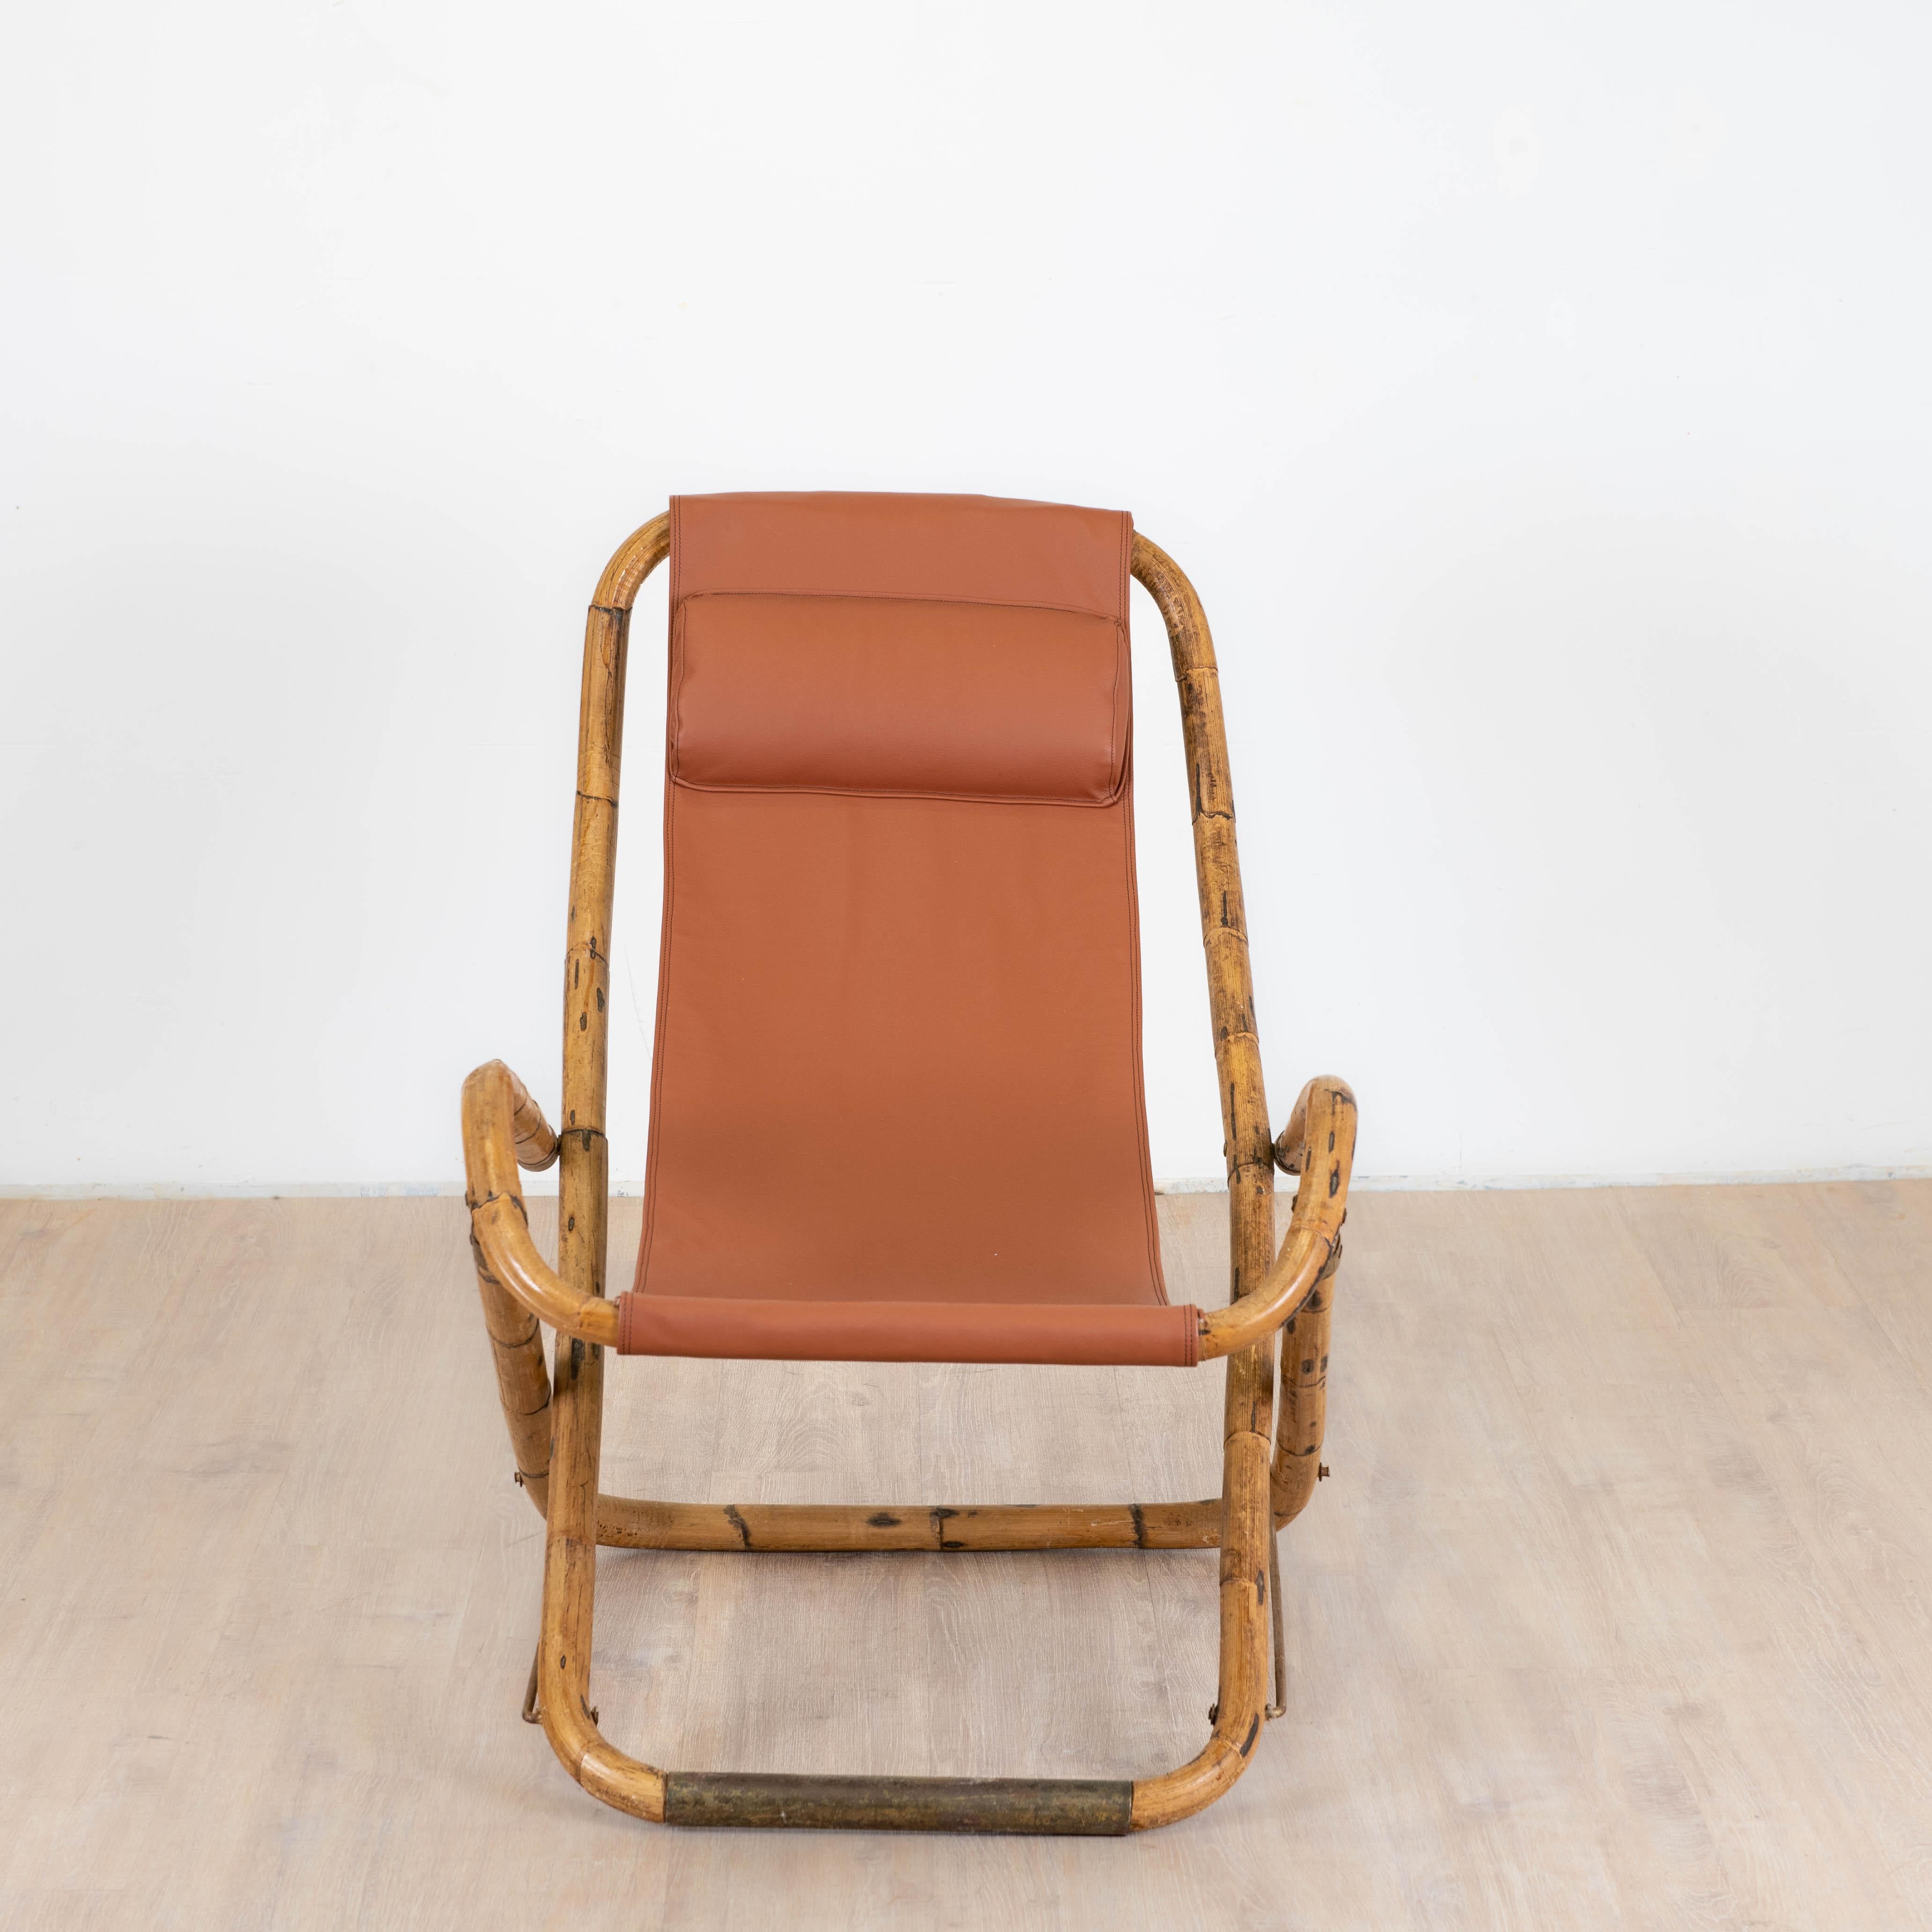 Transat de fabrication italienne des années 1960 la chaise longue pliante est en bambou plié, les charnières, les protection en contact du sol sont en laiton patiné par le temps. L'assise nouvellement retapisser avec un appuis tête rembourrer est